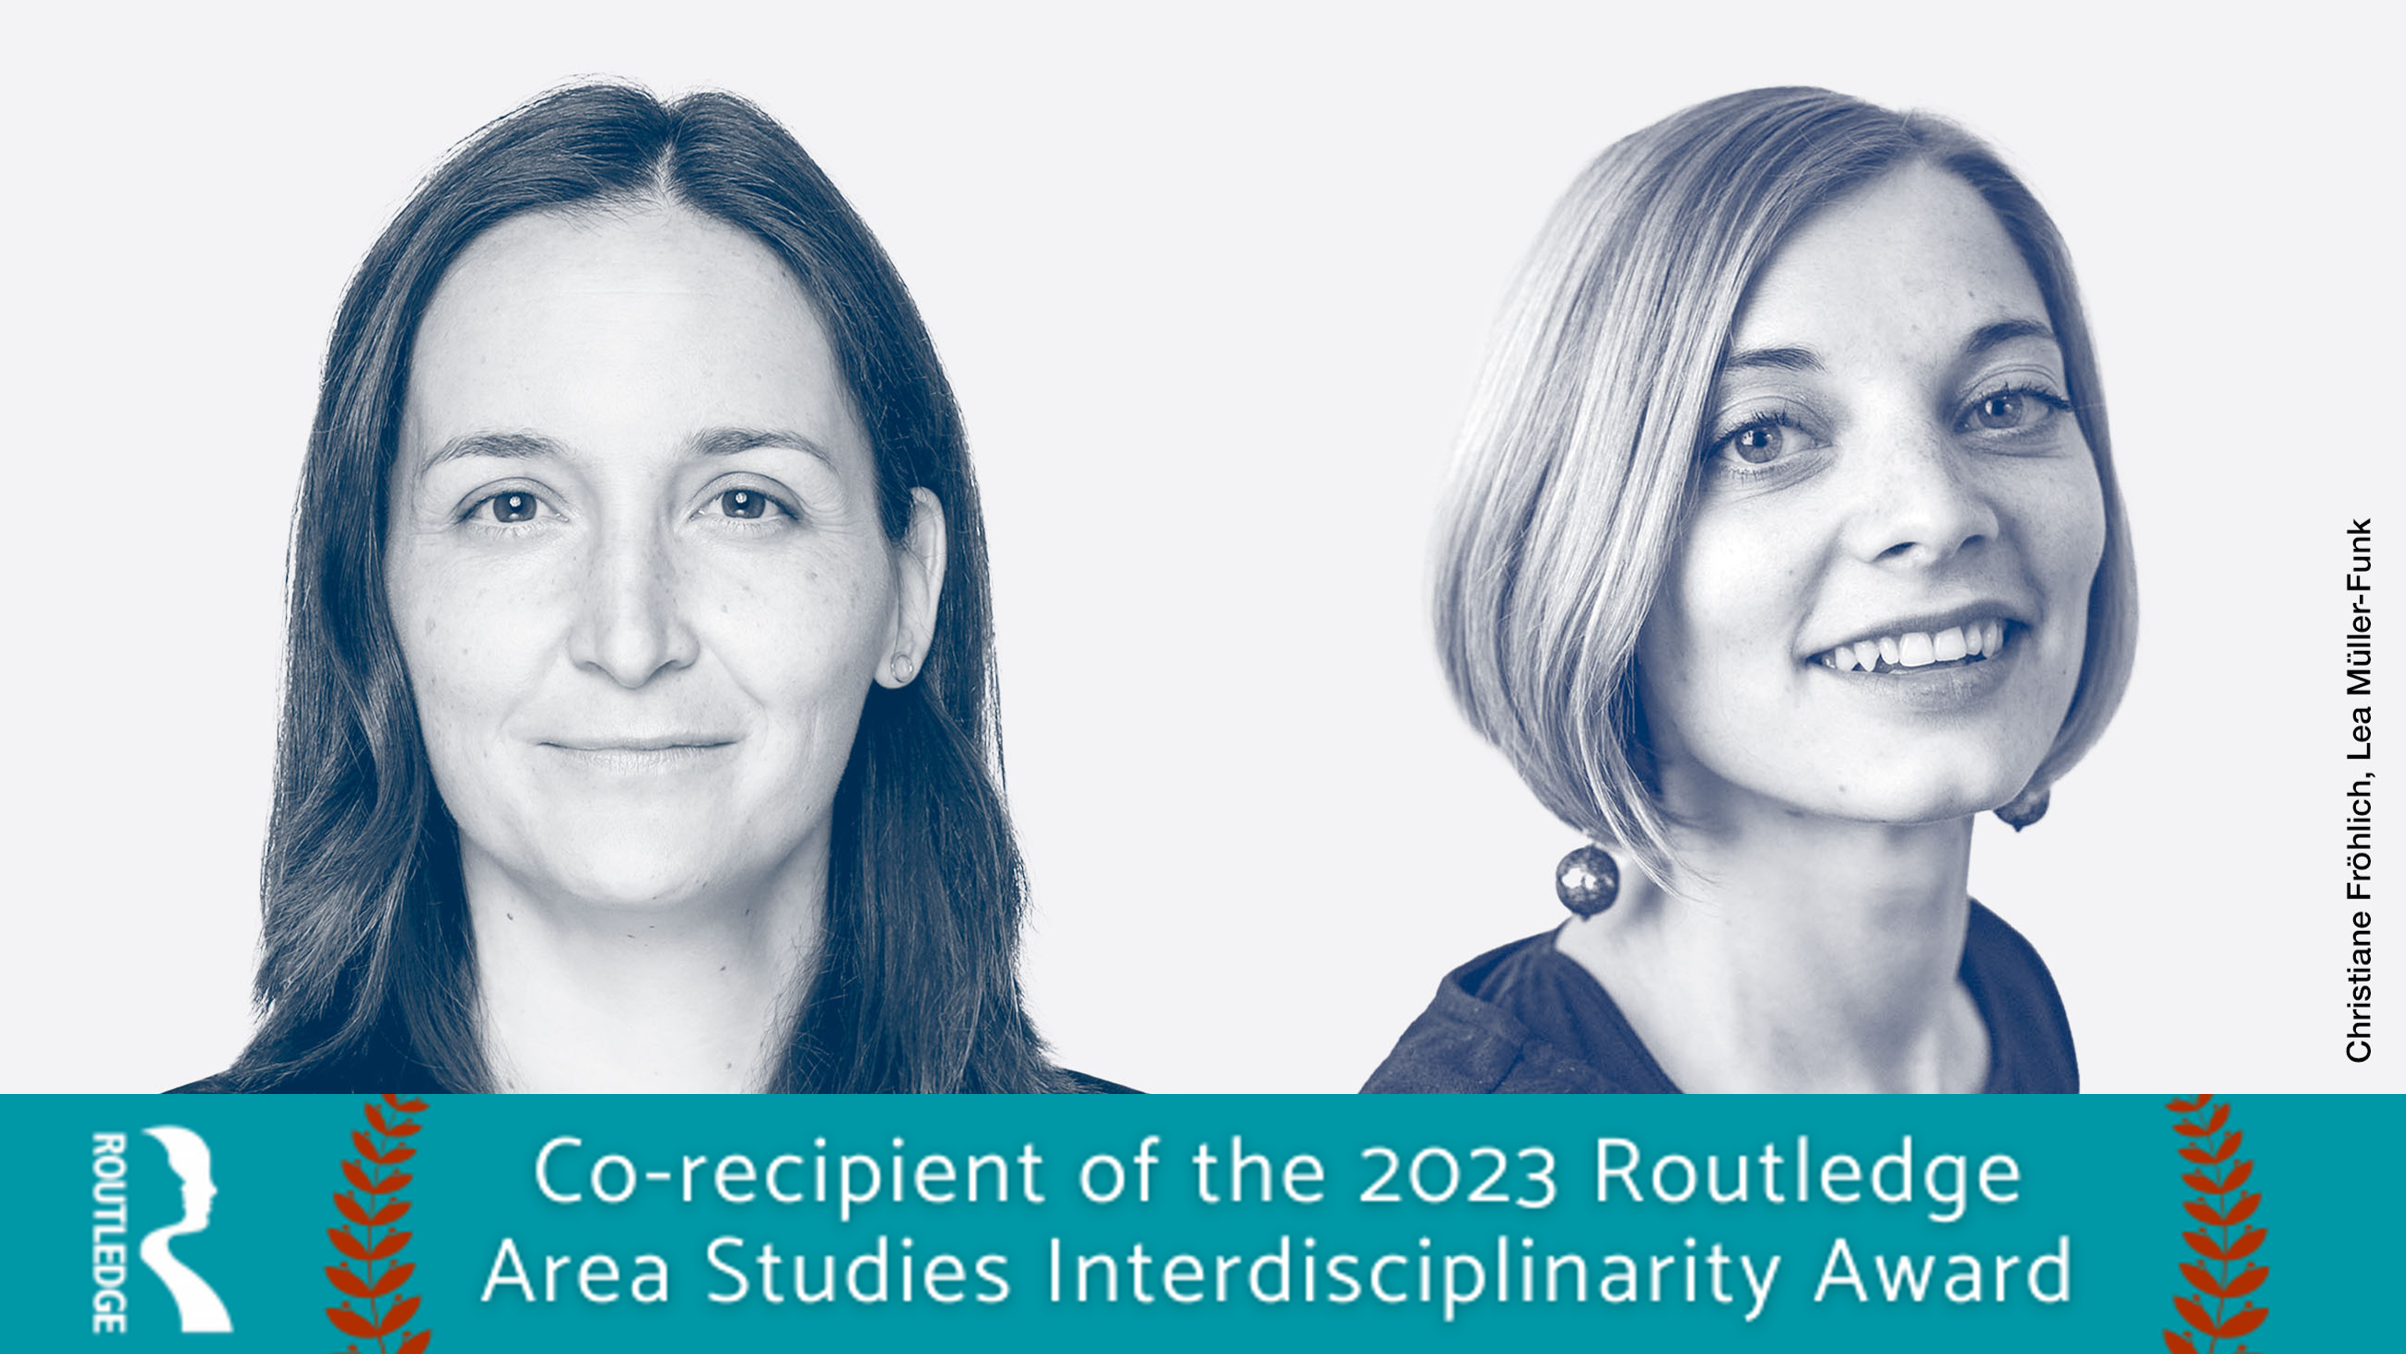 Auszeichnung für GIGA-Forscherinnen: Dr. Christiane Fröhlich und Dr. Lea Müller-Funk gewinnen Routledge Area Studies Interdisciplinarity Award